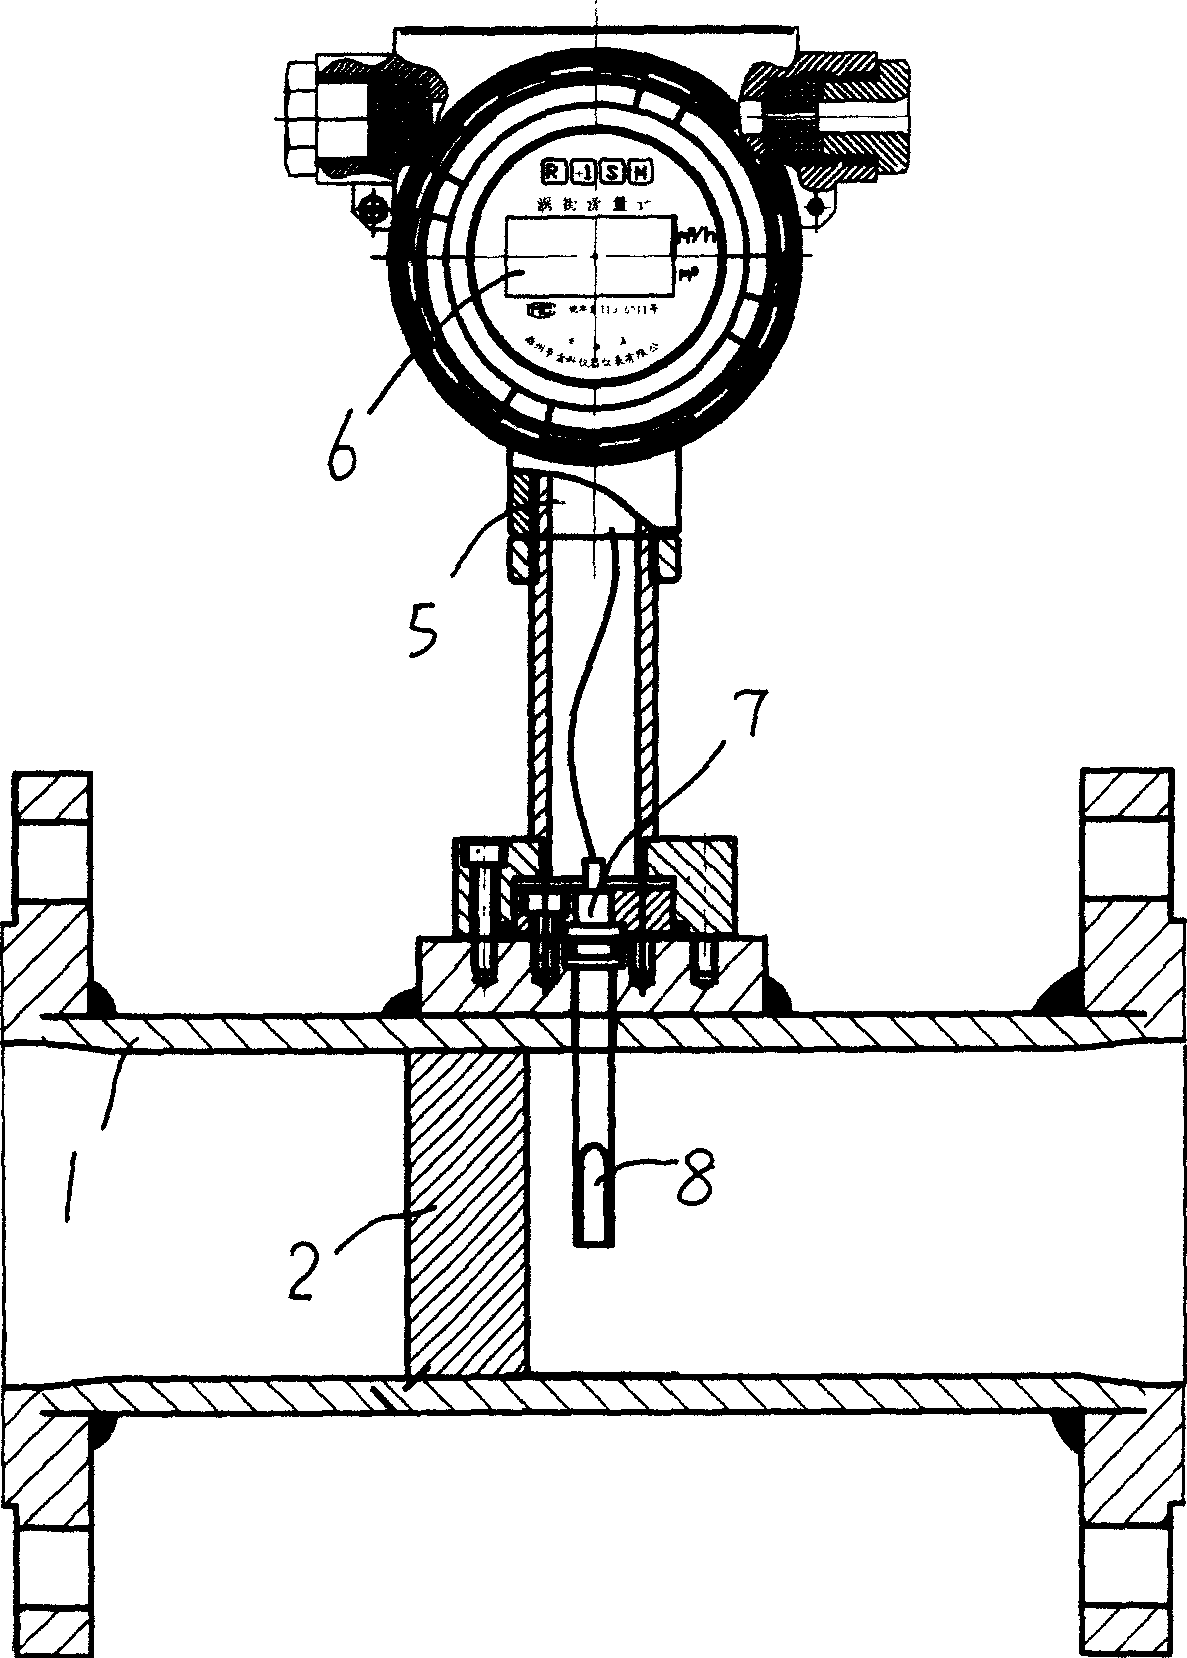 Magnetic vortex street flowmeter